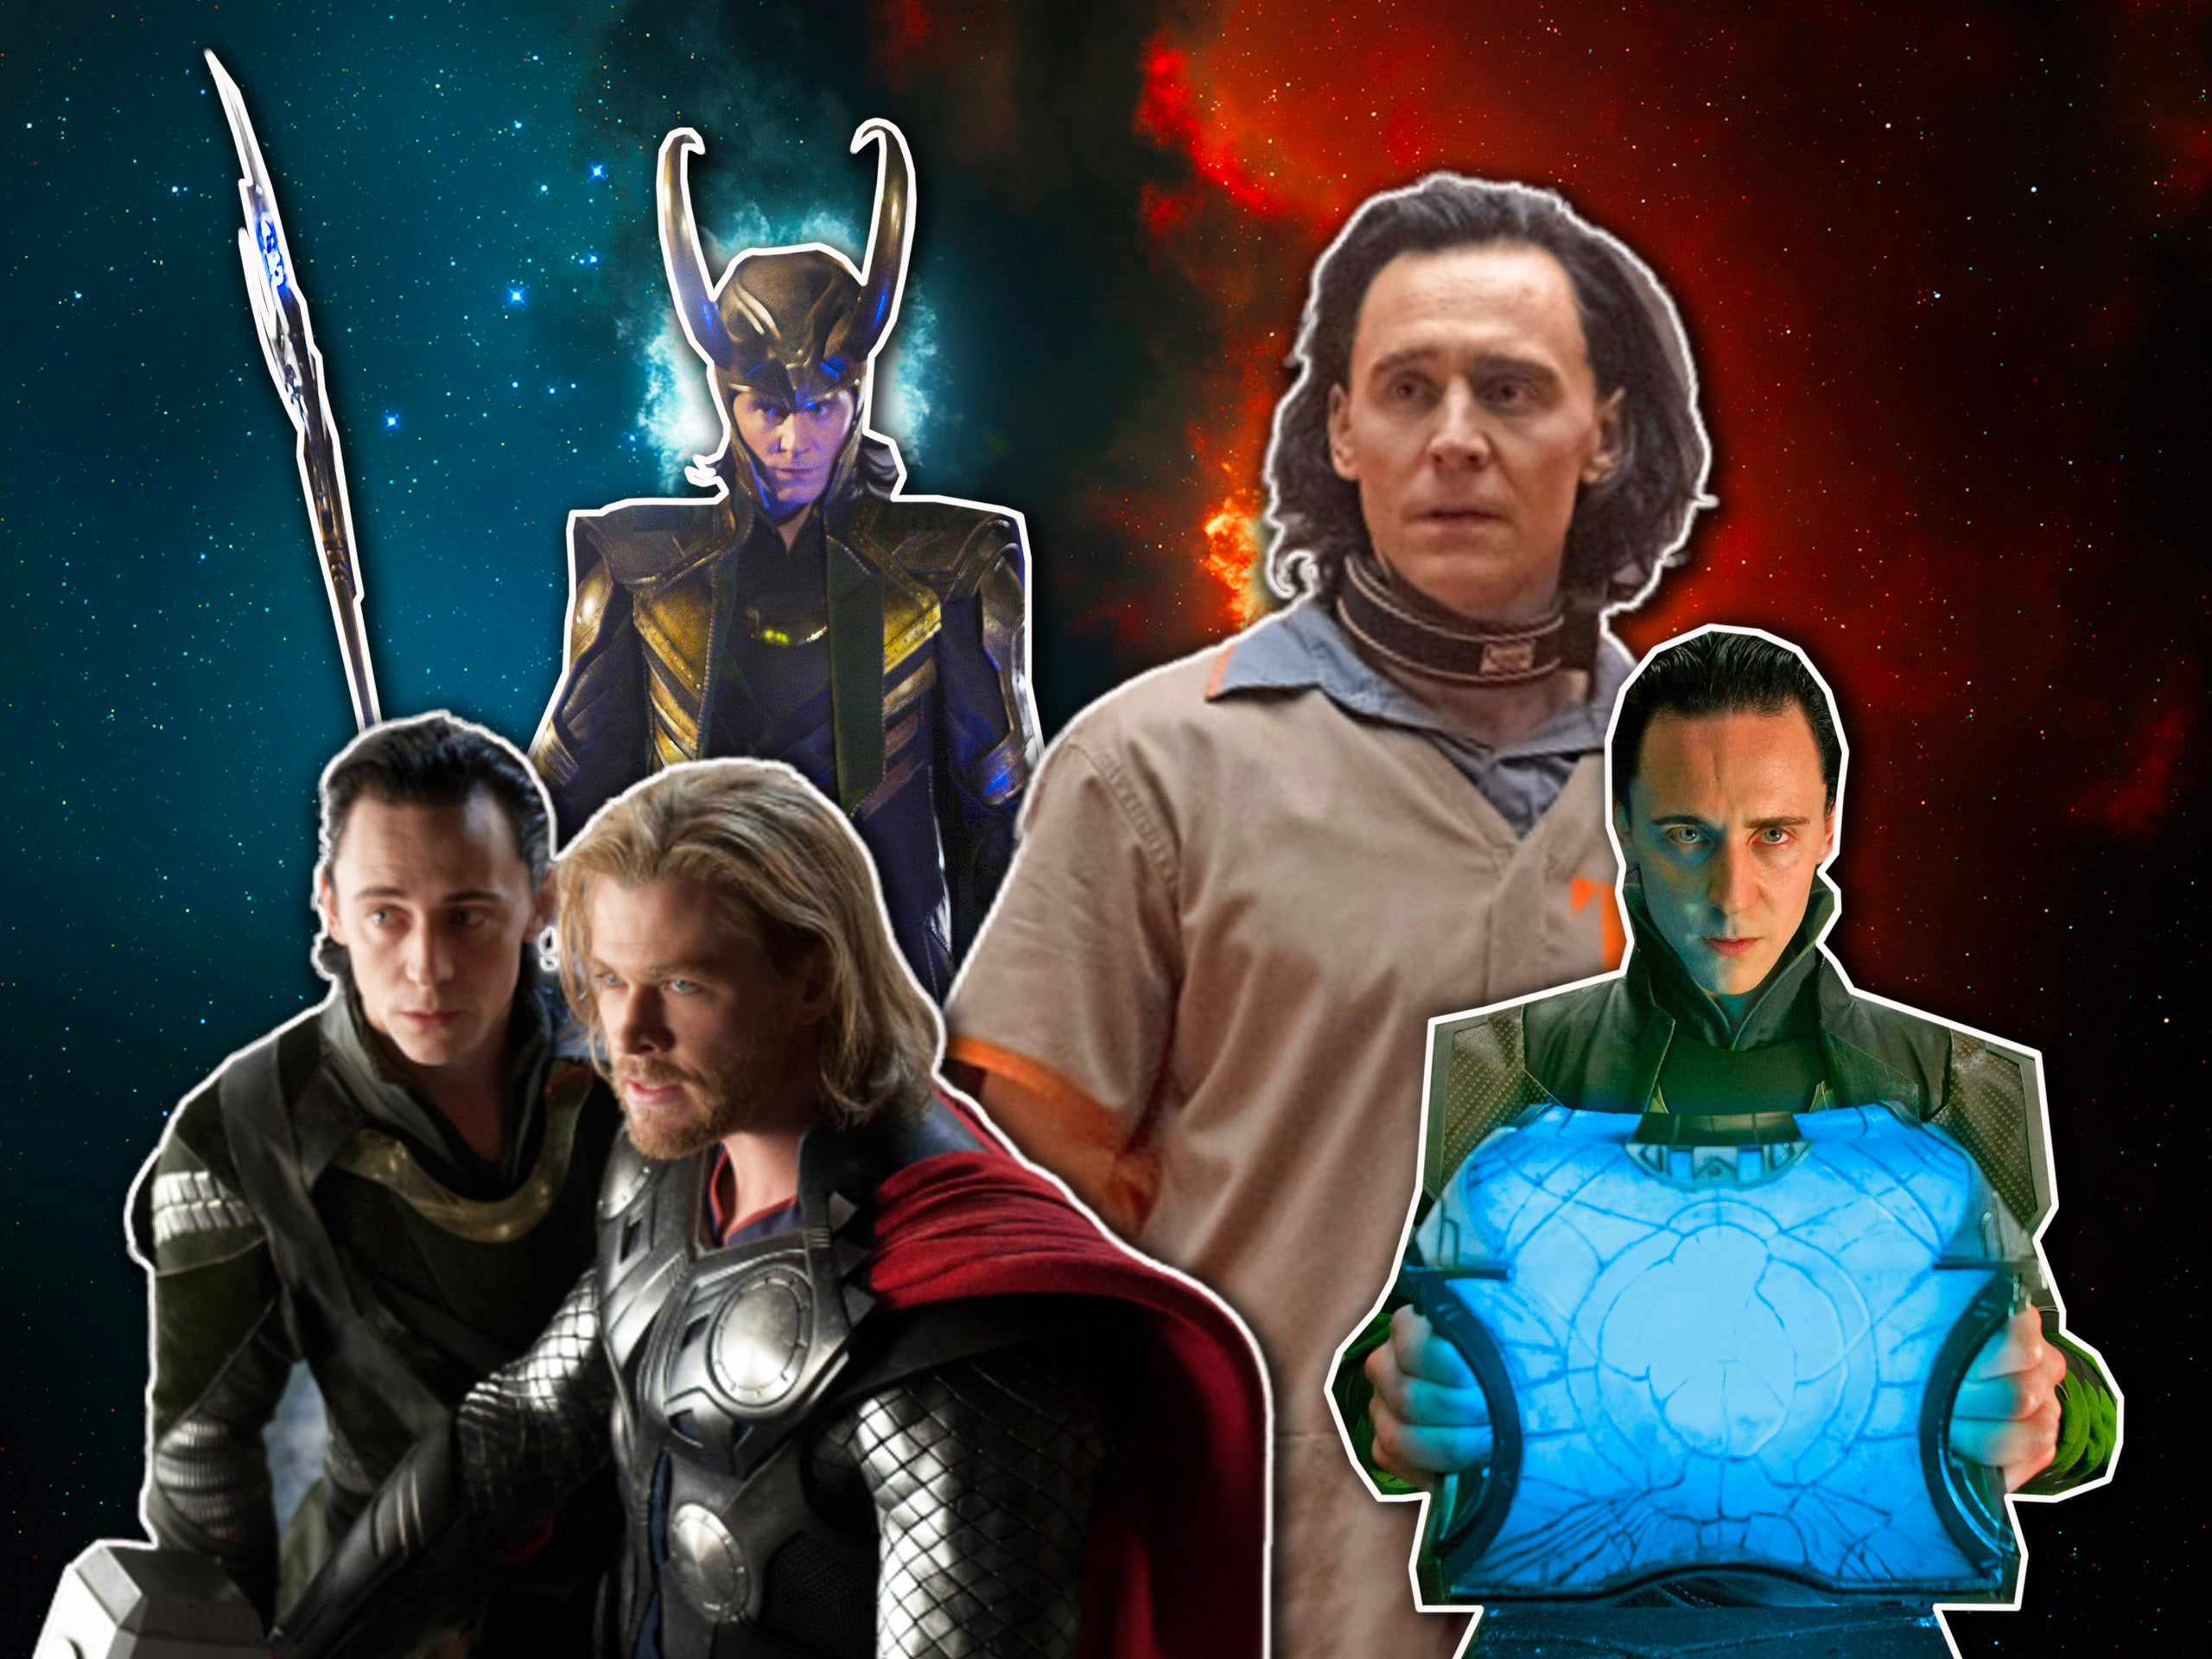 ENE REVIEW: 'Ragnarok' about Thor, Loki, Entertainment